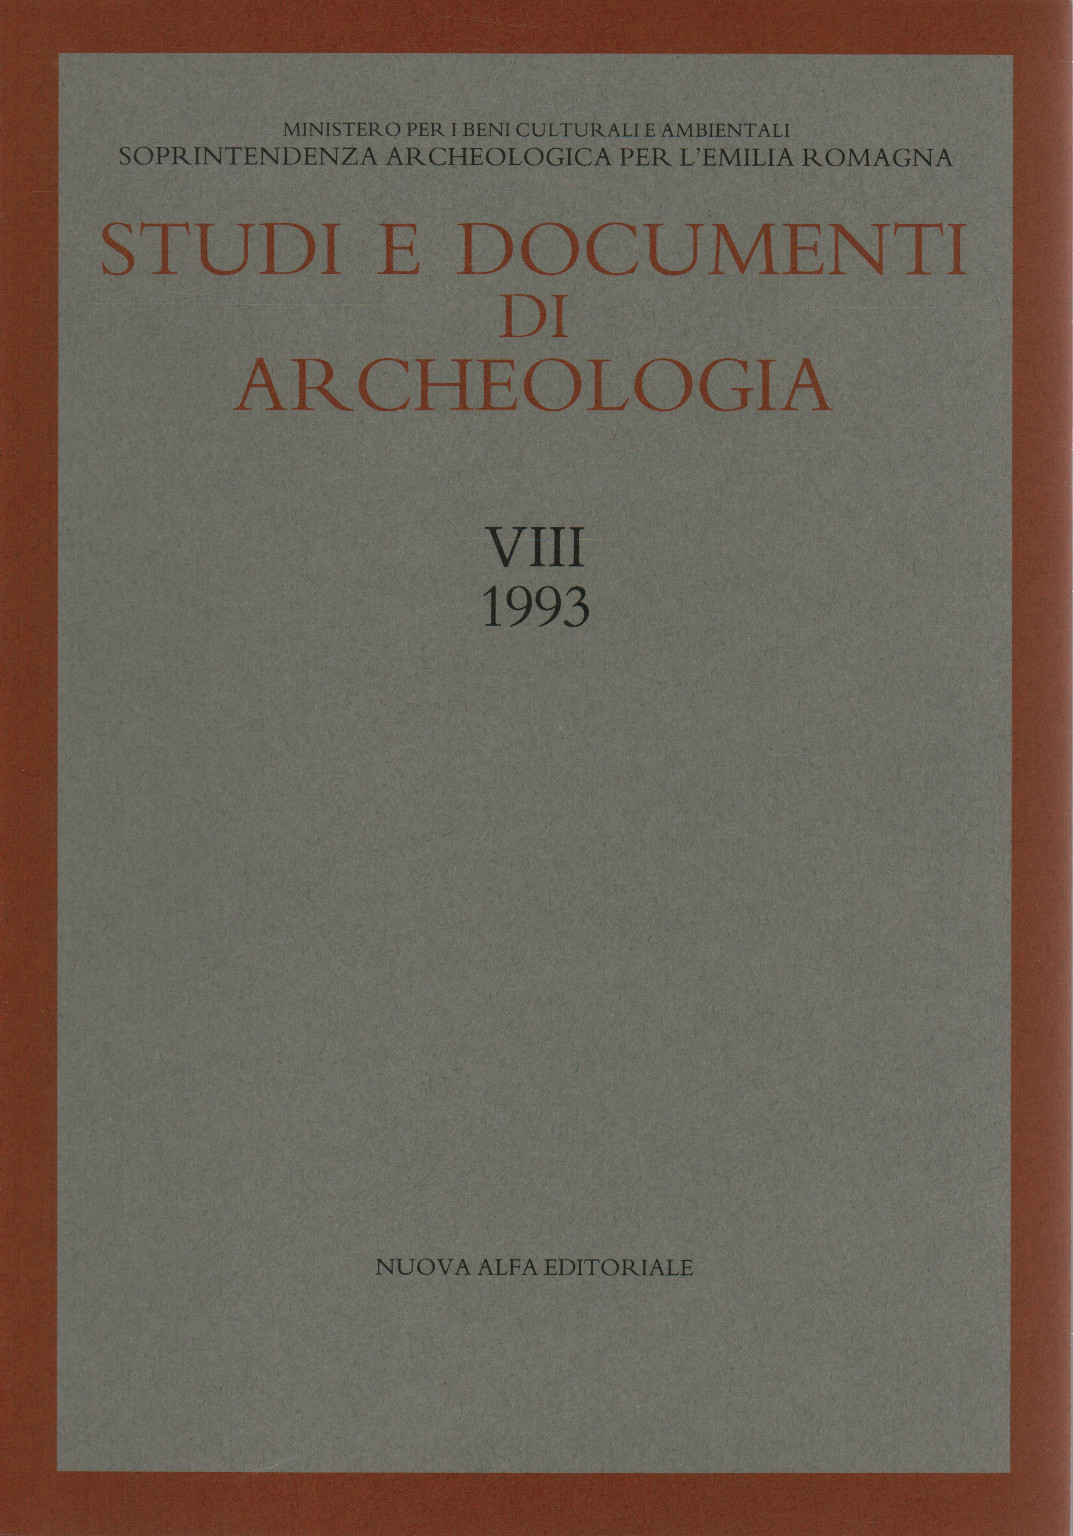 Estudios y documentos arqueológicos. Vol. VIII (1993), s.a.